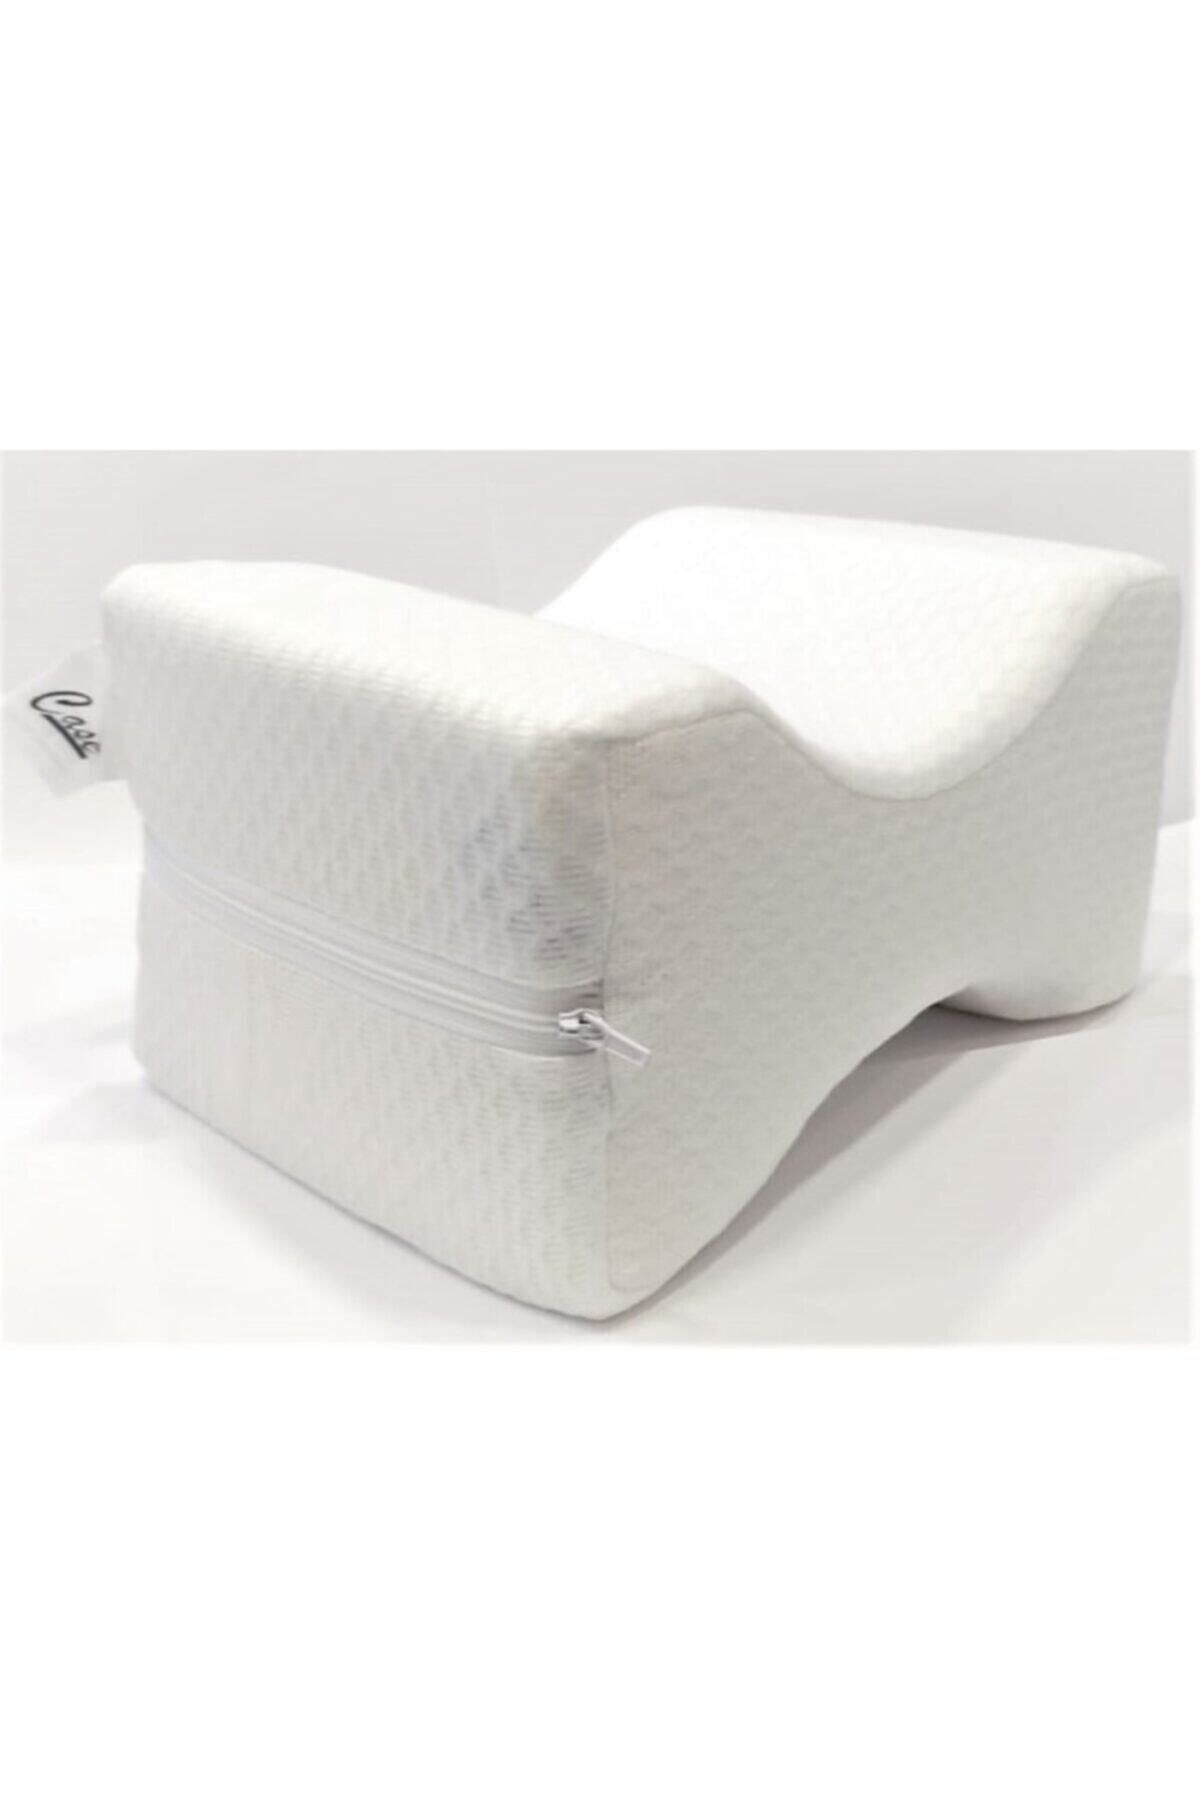 Case Abc Soft Visco Elastik Bacak Arası Pozisyon Yastığı Beyaz